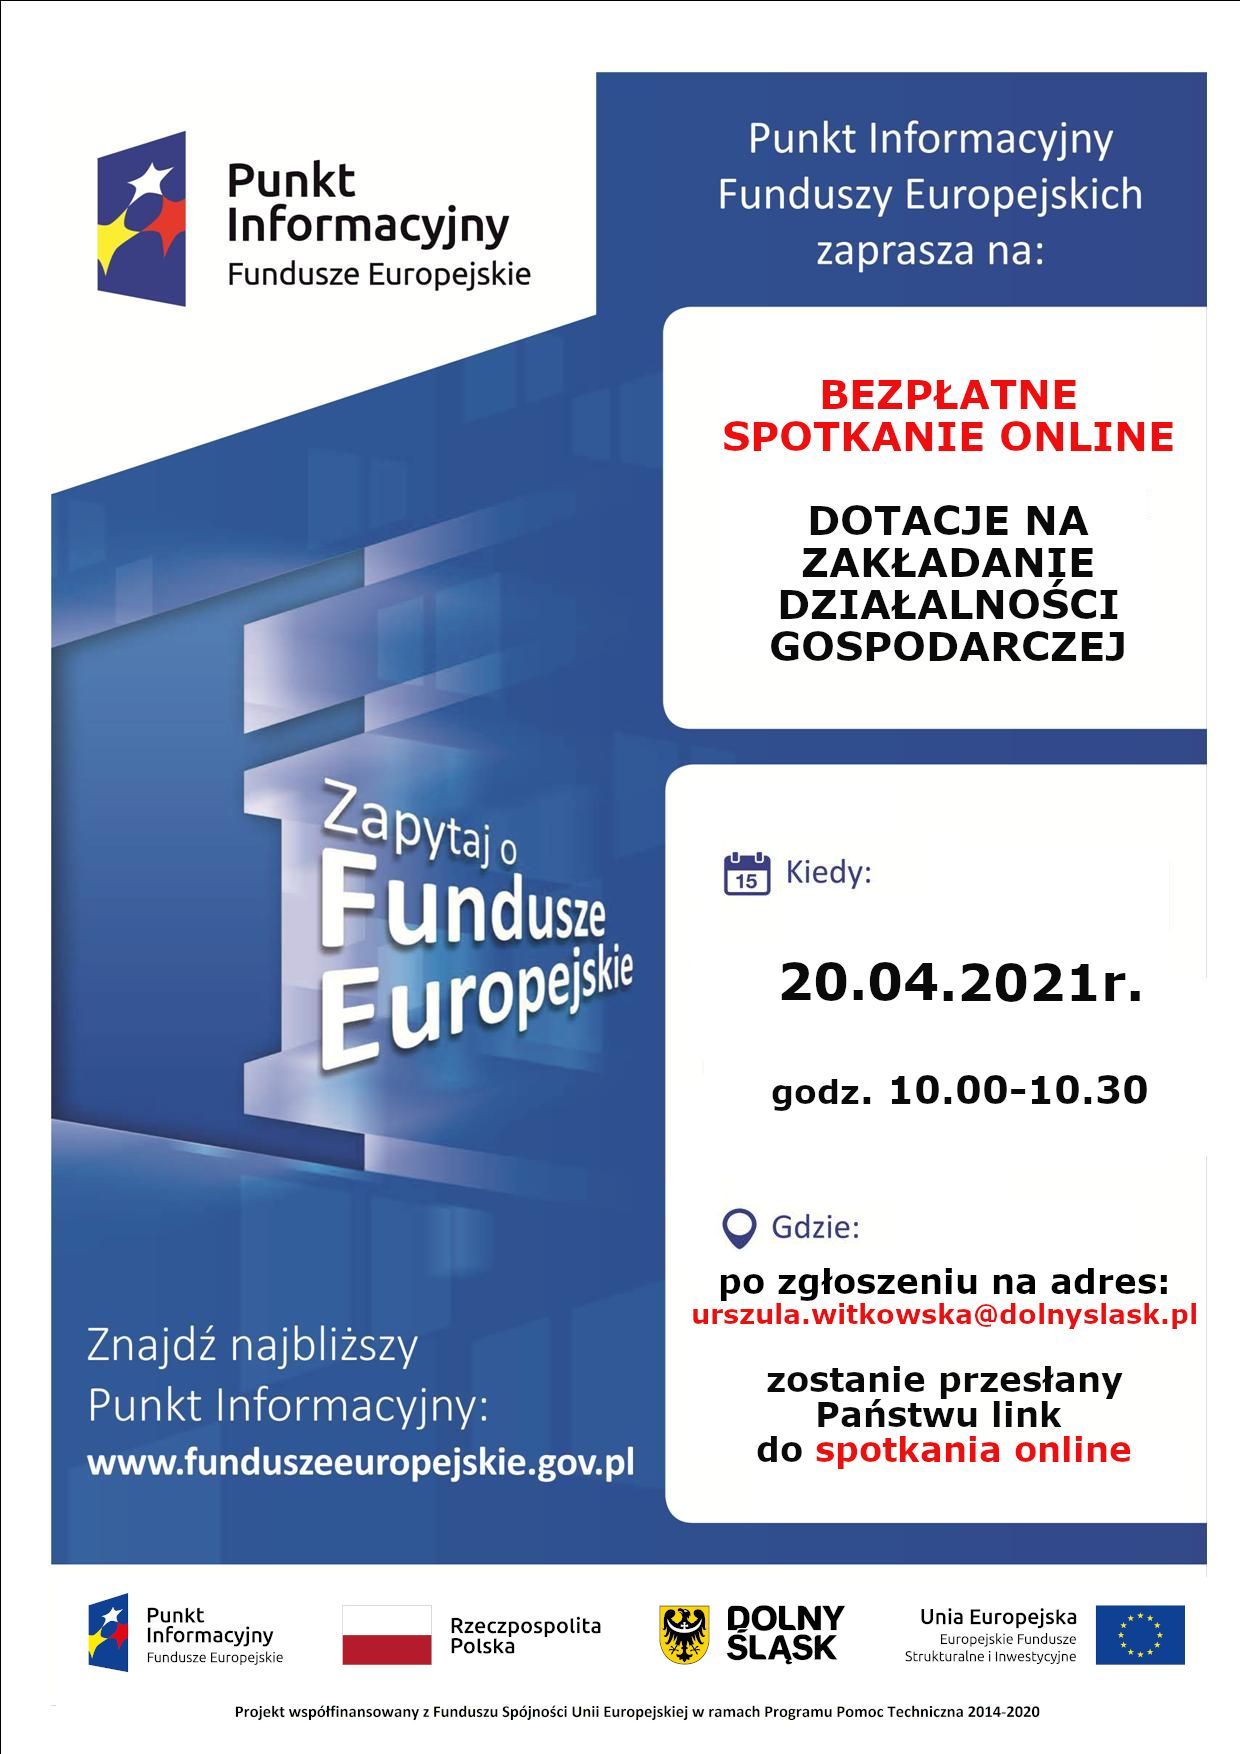 Punkt Informacyjny Funduszy europejskich zaprasza na bezpłatne spotkania online 20.04.2021r. po zgłoszeniu na adres urszula.witkowska@dolnyslask.pl